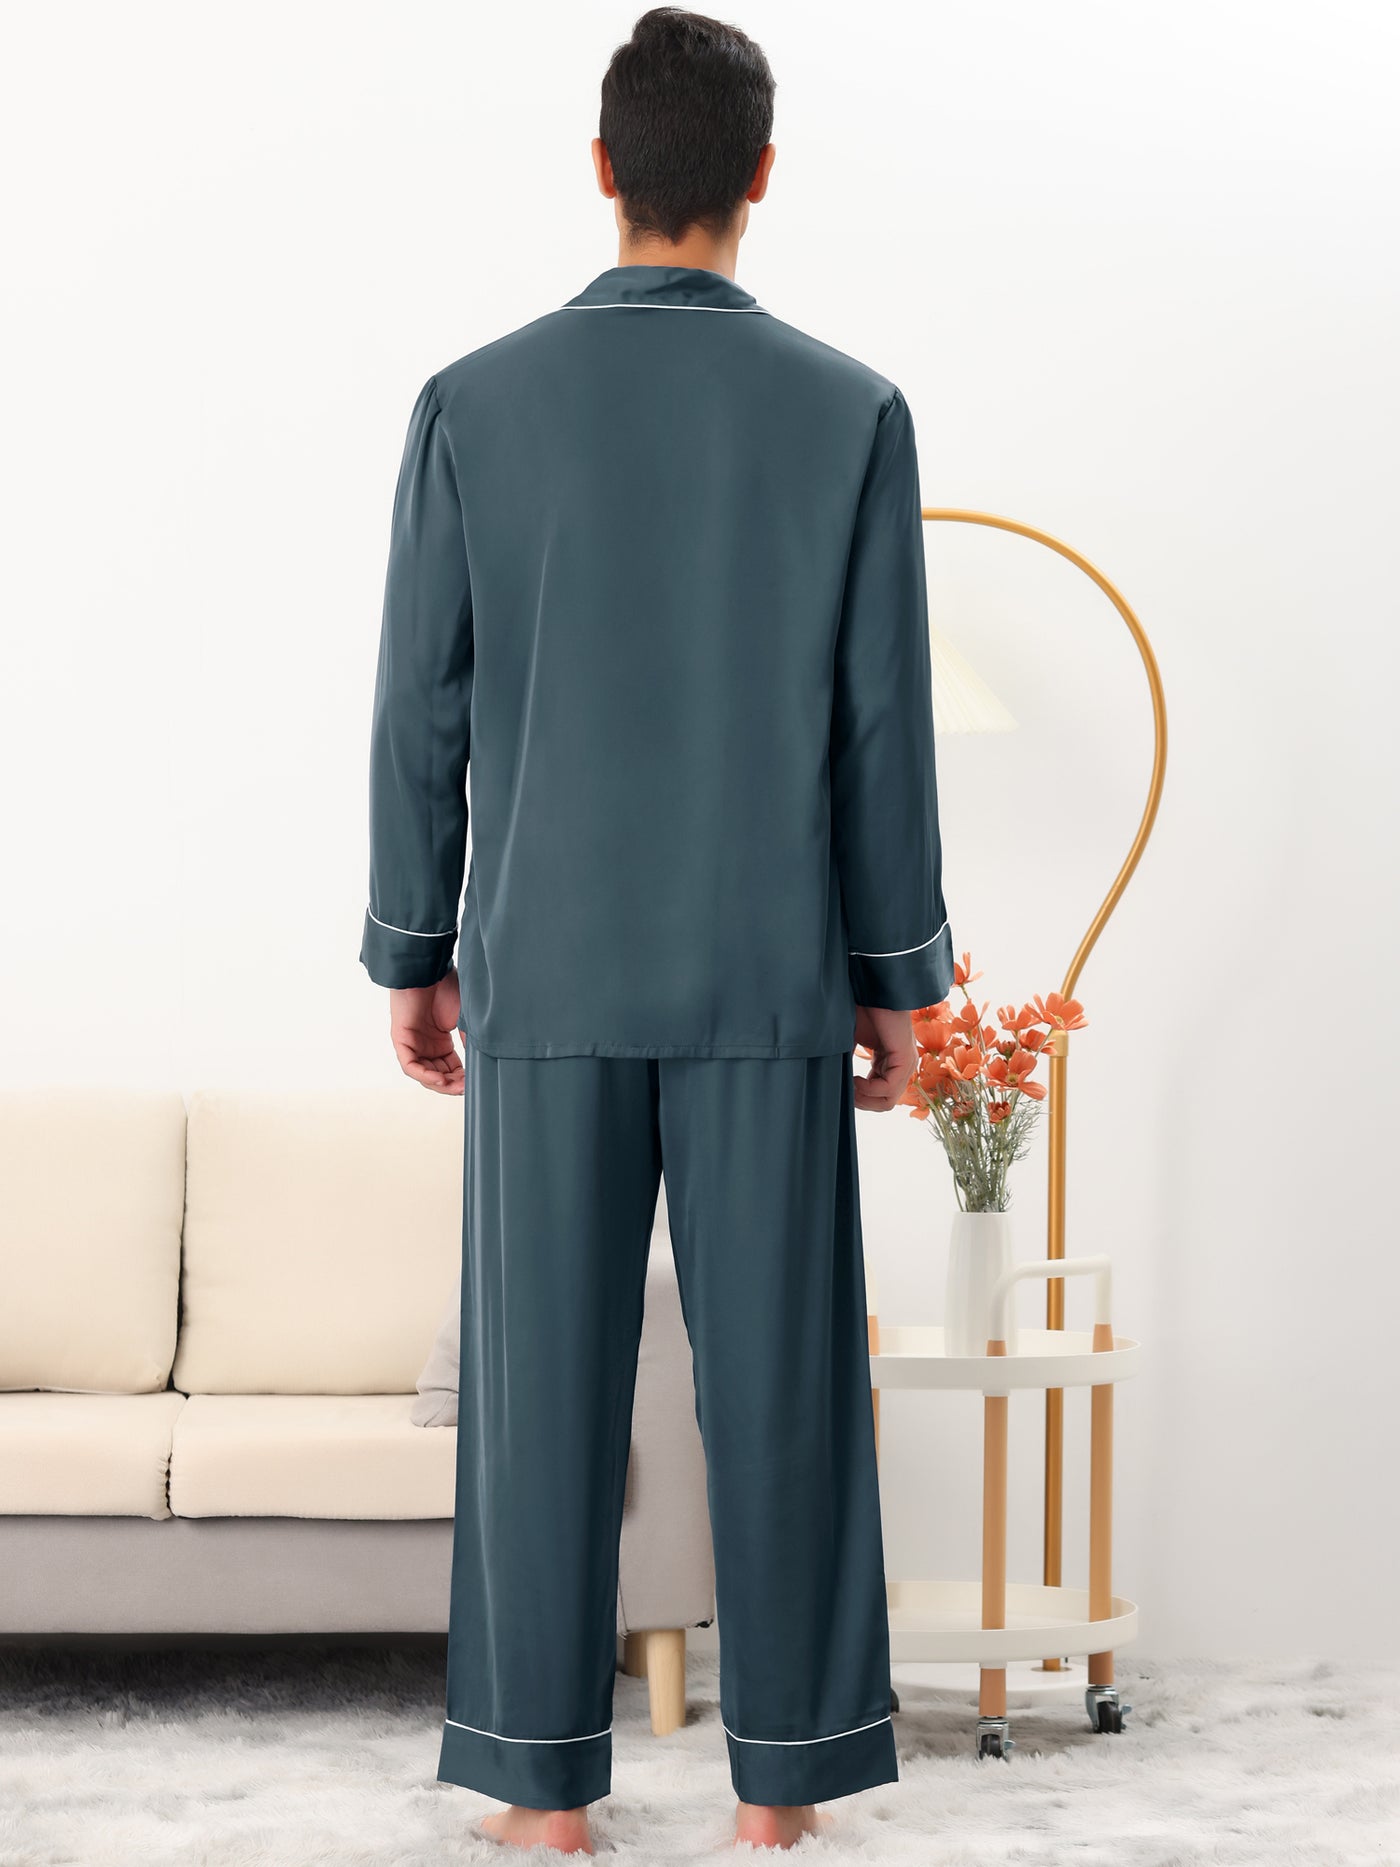 Bublédon Men's Sleepwear Pjs Long Sleeves Shirt and Pants Nightwear Satin Pajama Set